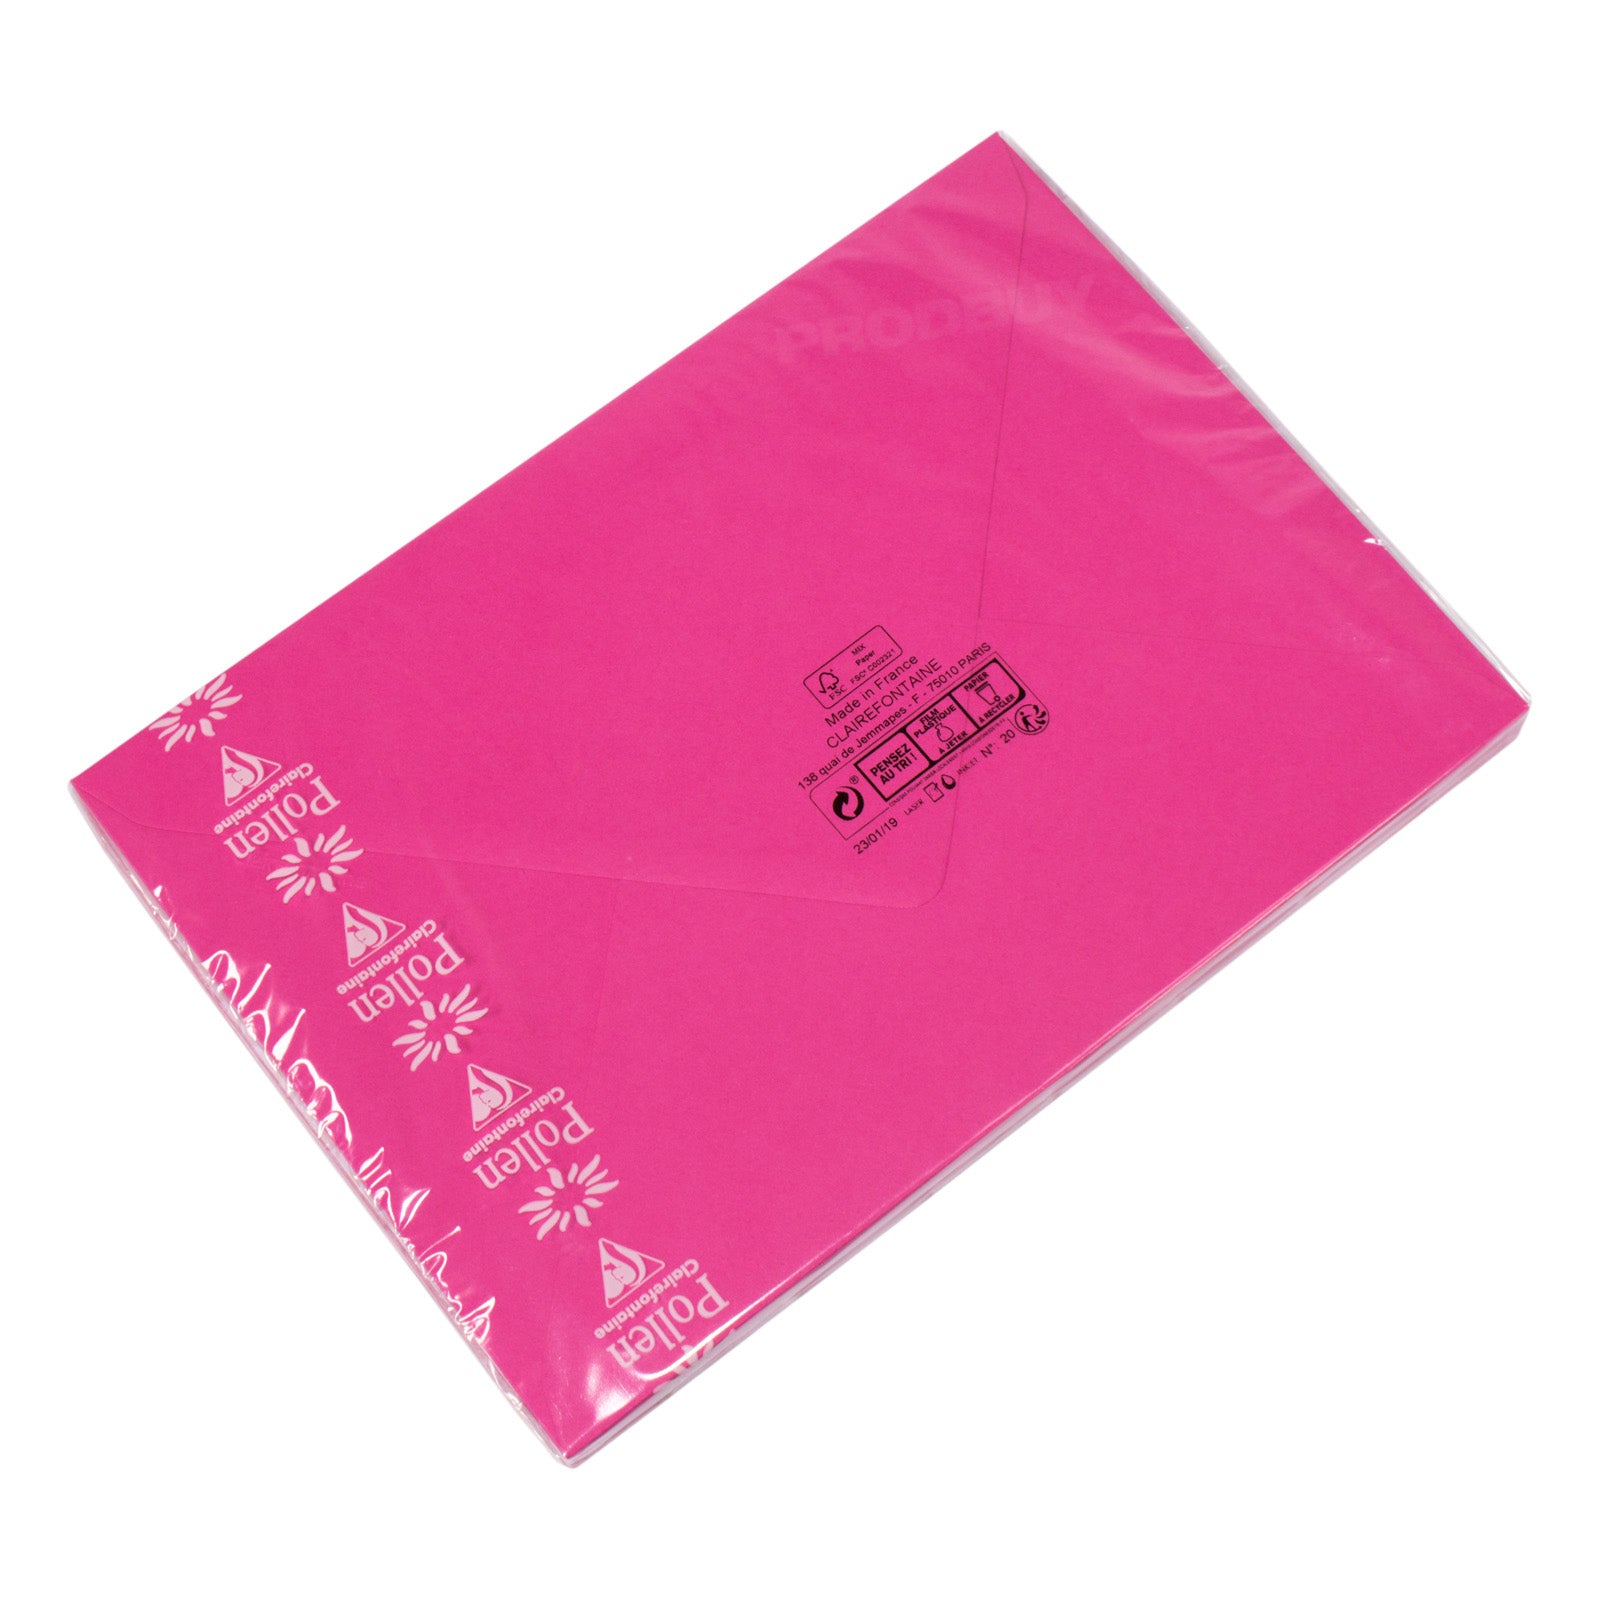 Enveloppes Papier Coloré A5/ C5 Or